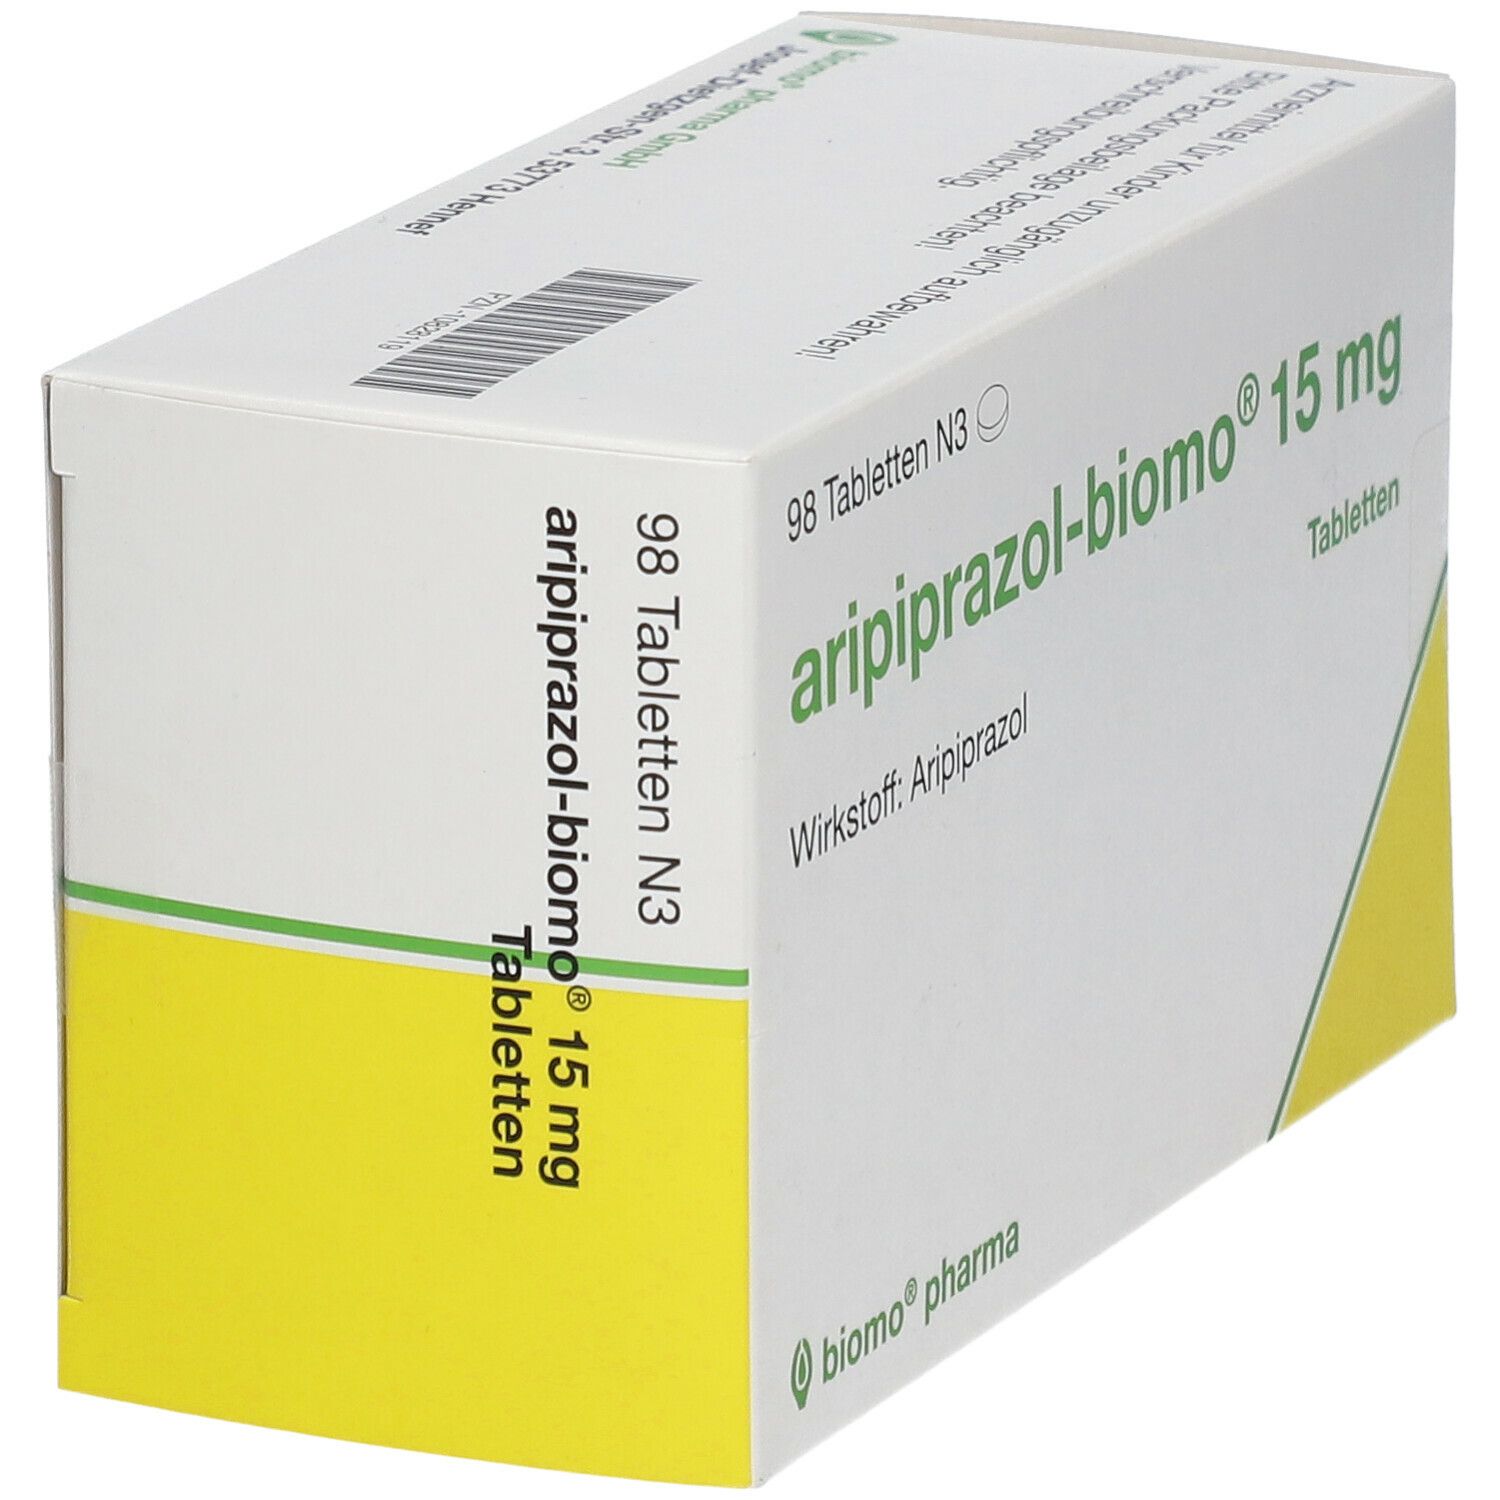 aripiprazol-biomo® 15 mg